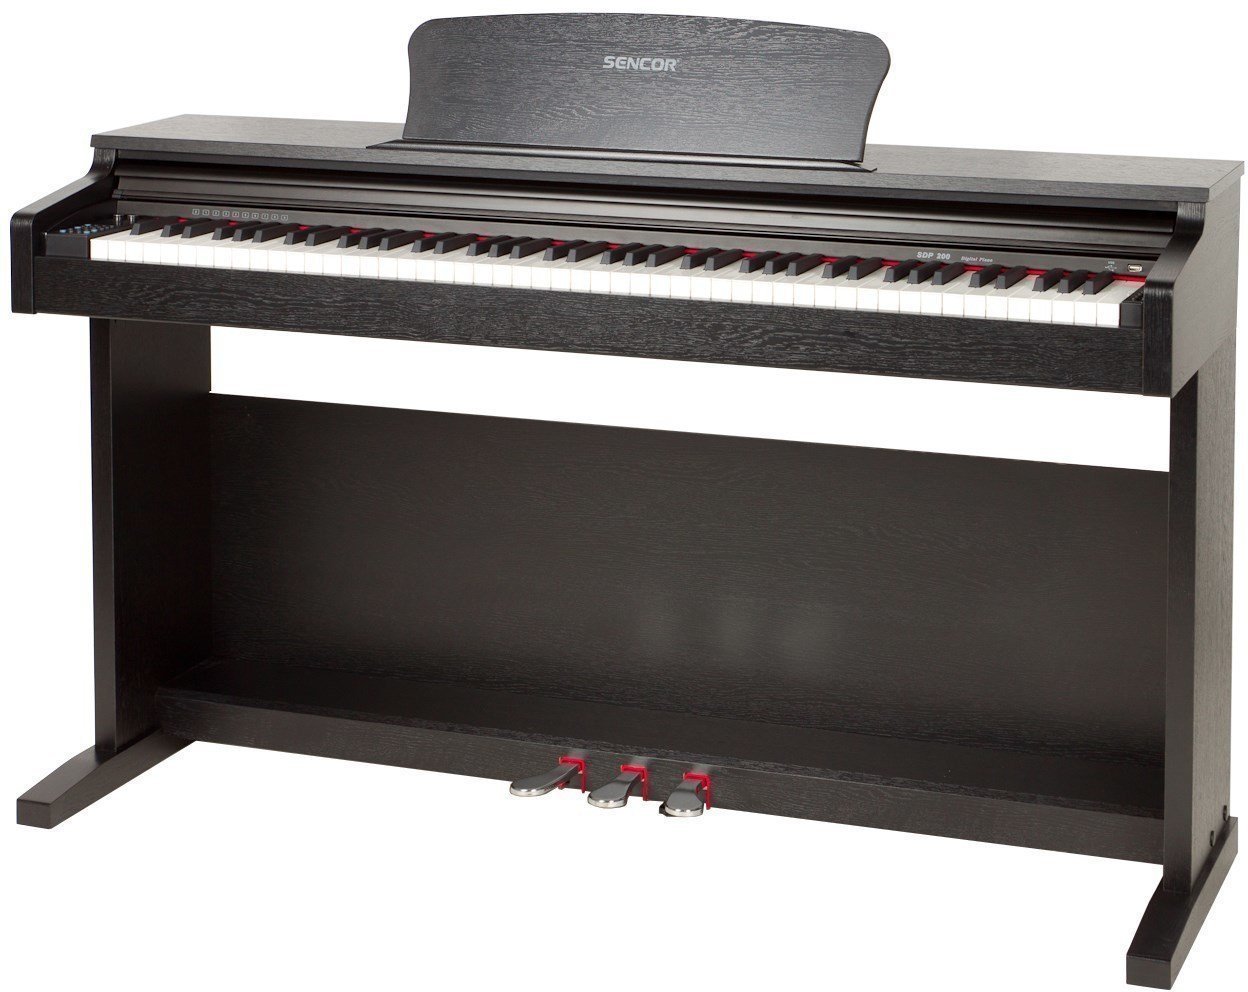 Piano numérique SENCOR SDP 200 Black Piano numérique